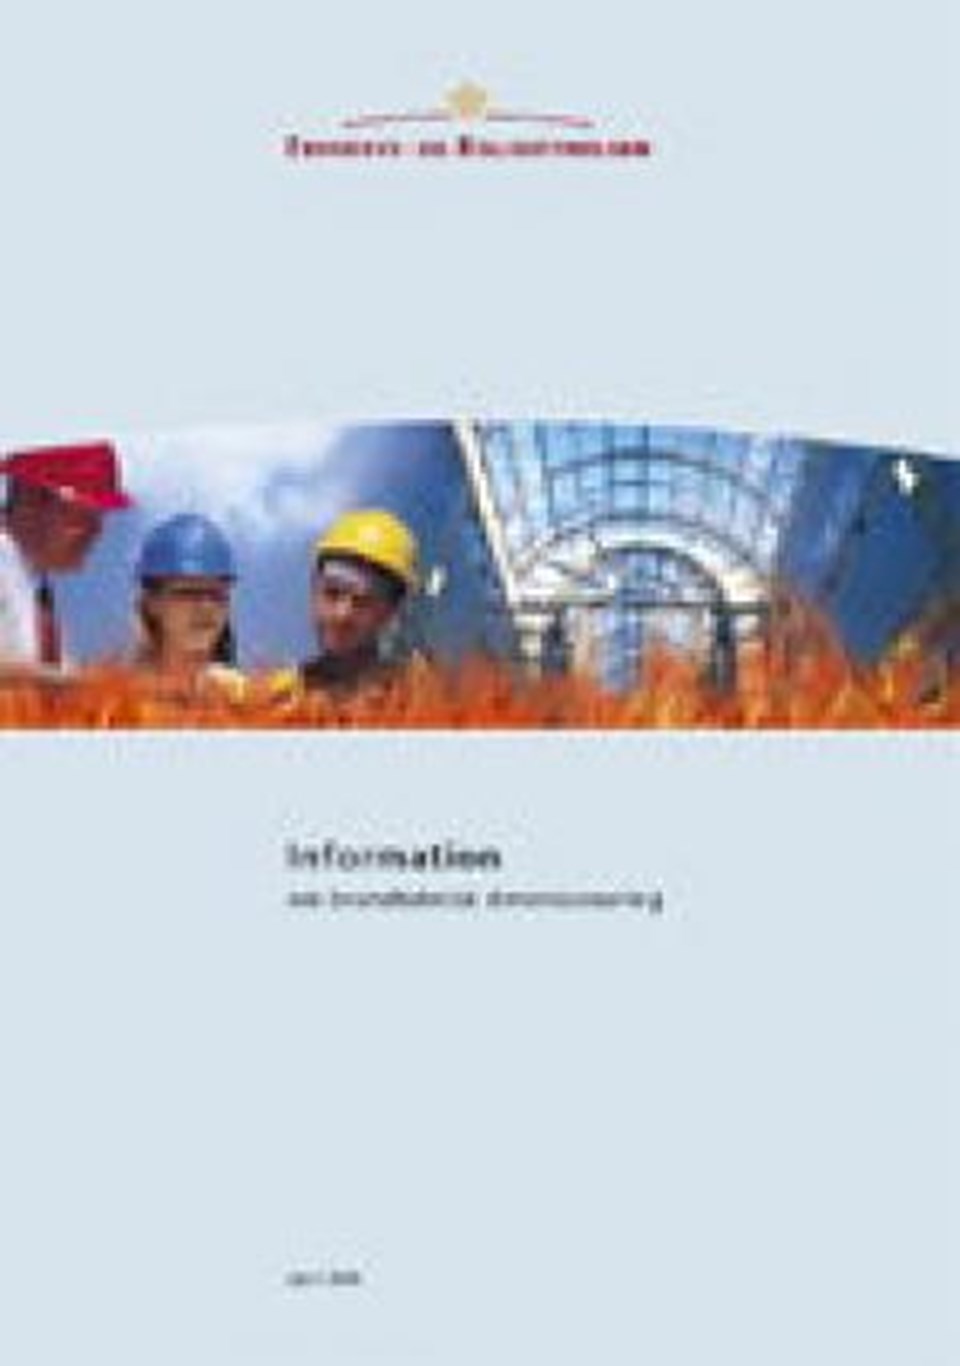 Information om brandteknisk dimensionering